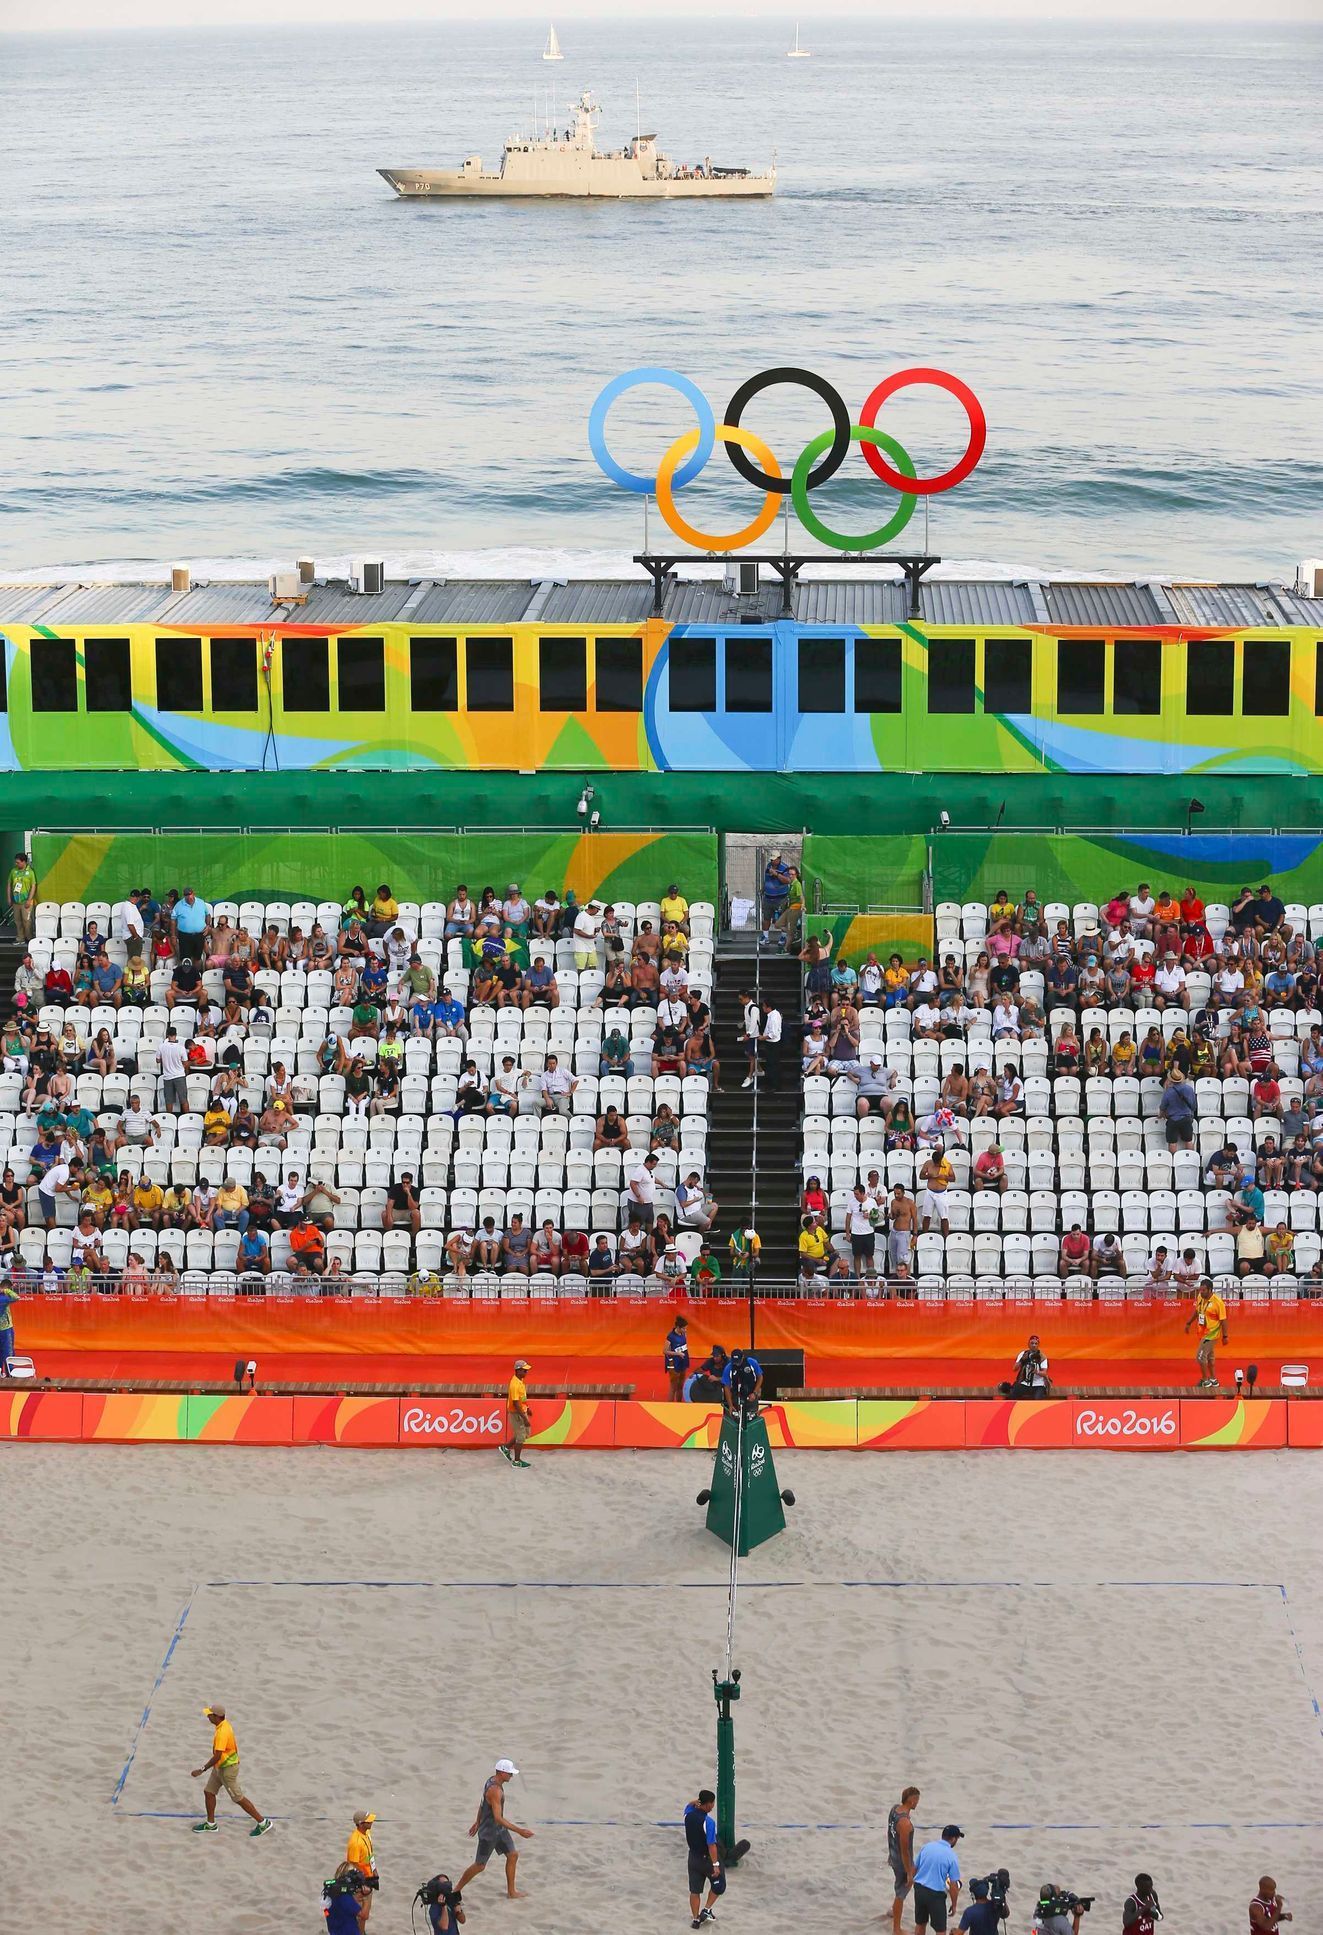 OH 2016, plážový volejbal: areál na pláži Copacabana chráněný válečnoulodí